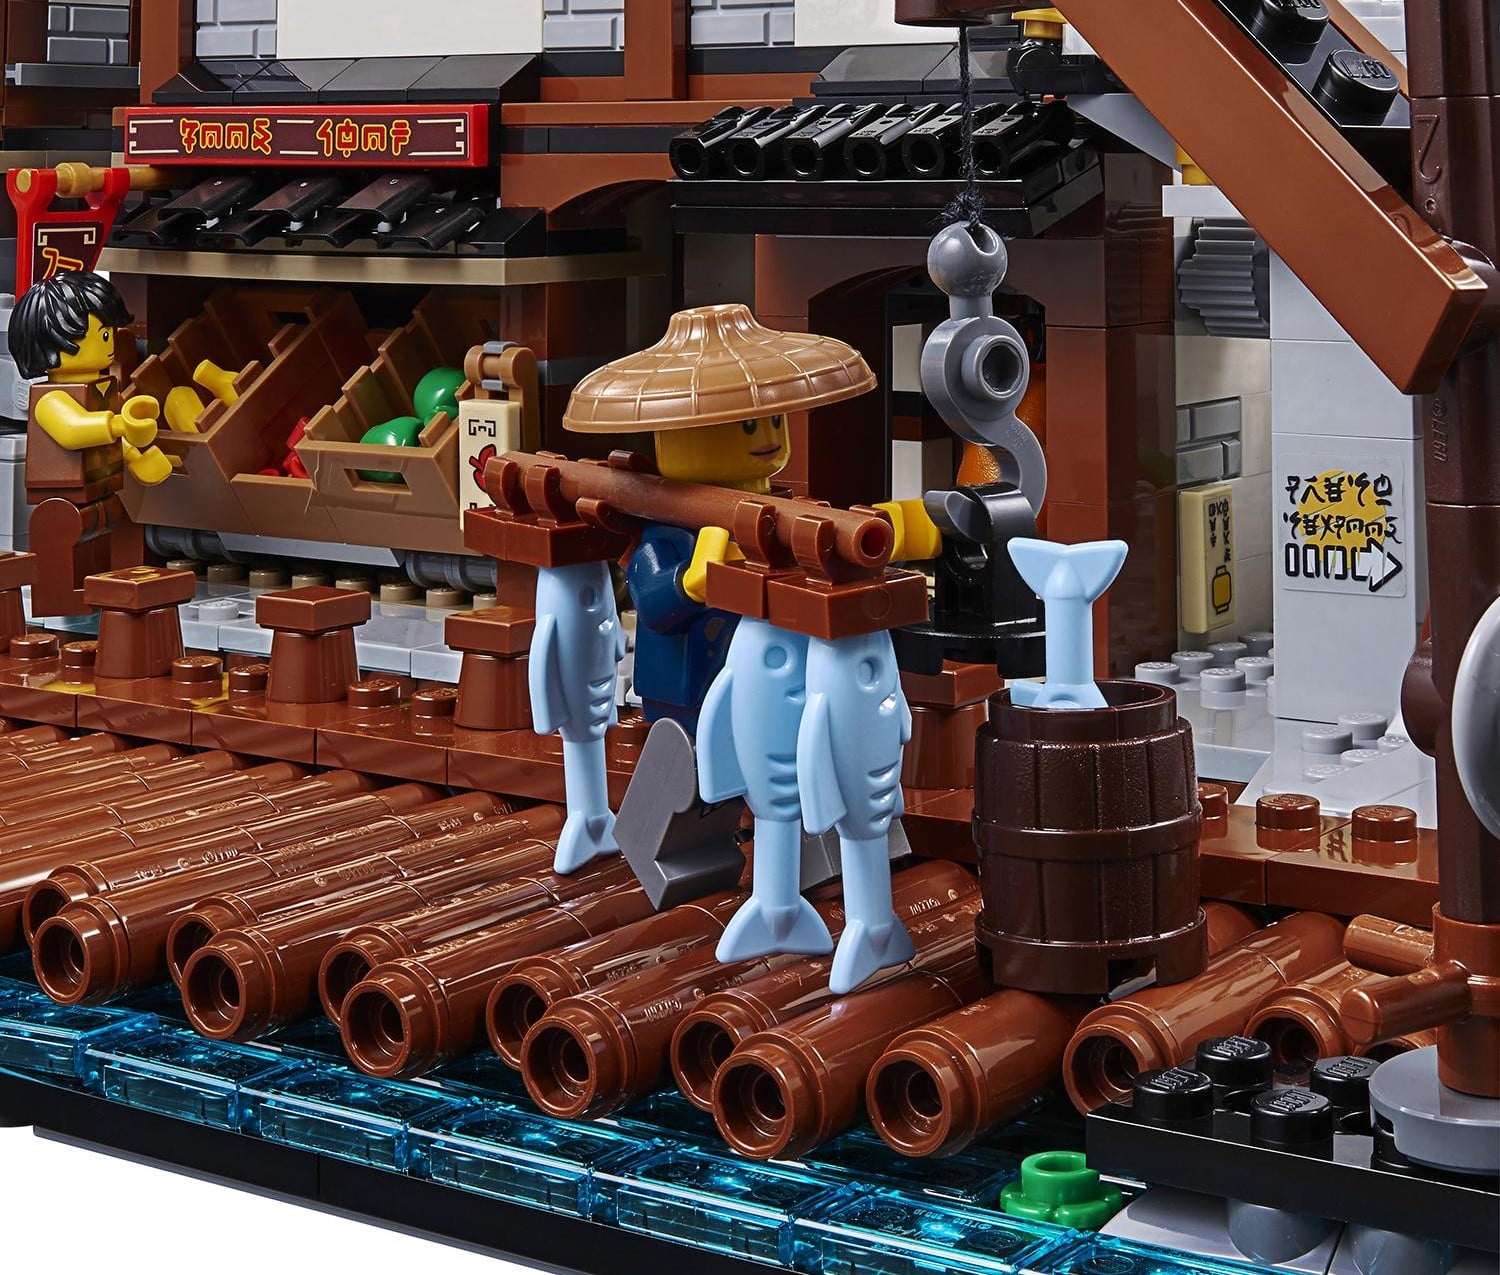 Конструктор Lego Ninjago – Порт Ниндзяго Сити  